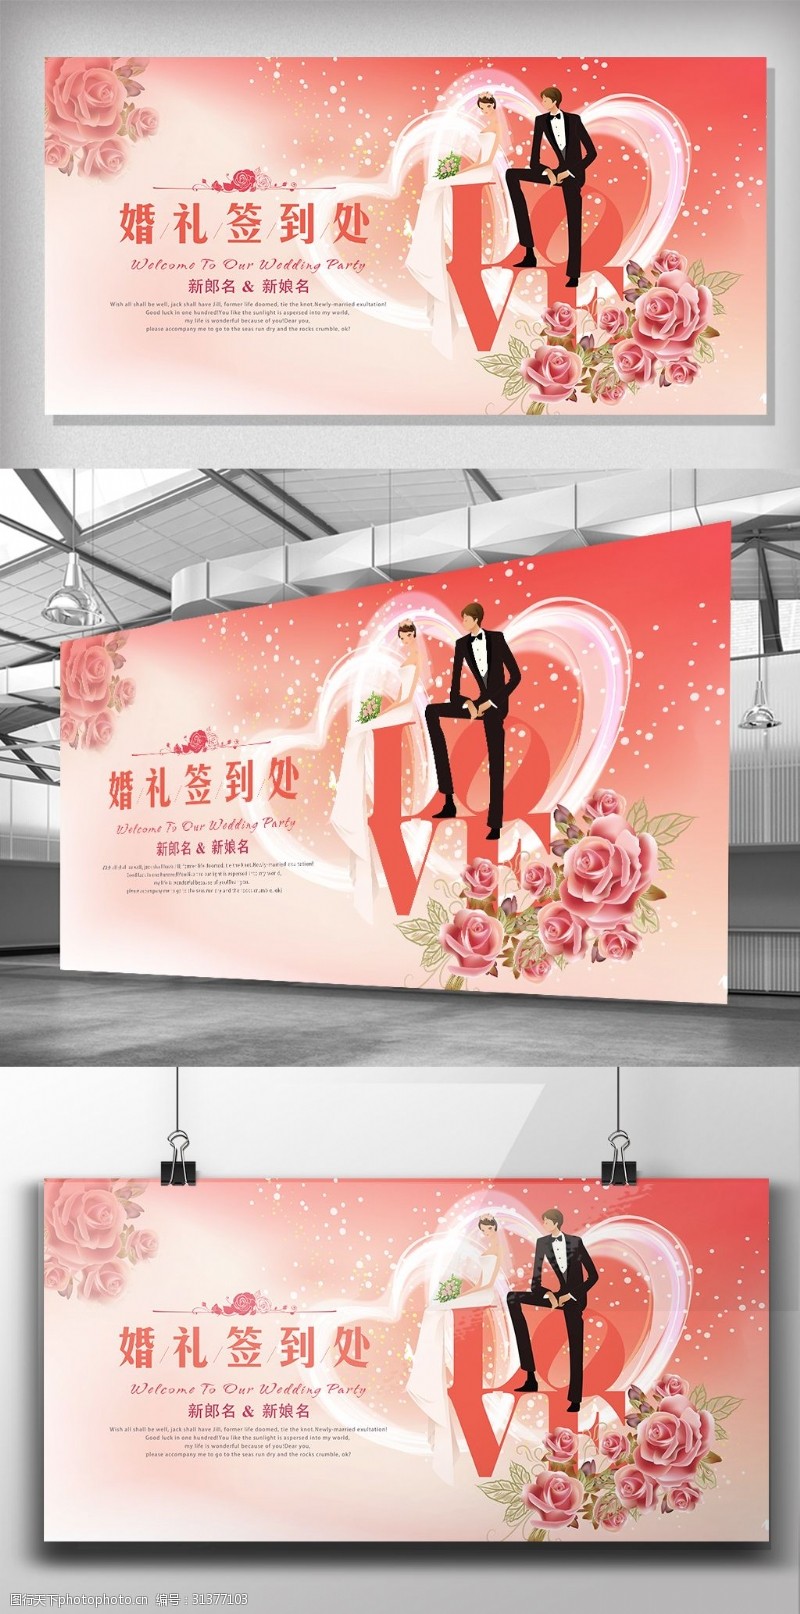 婚庆海报模板下载浪漫婚礼庆典签到中心展板